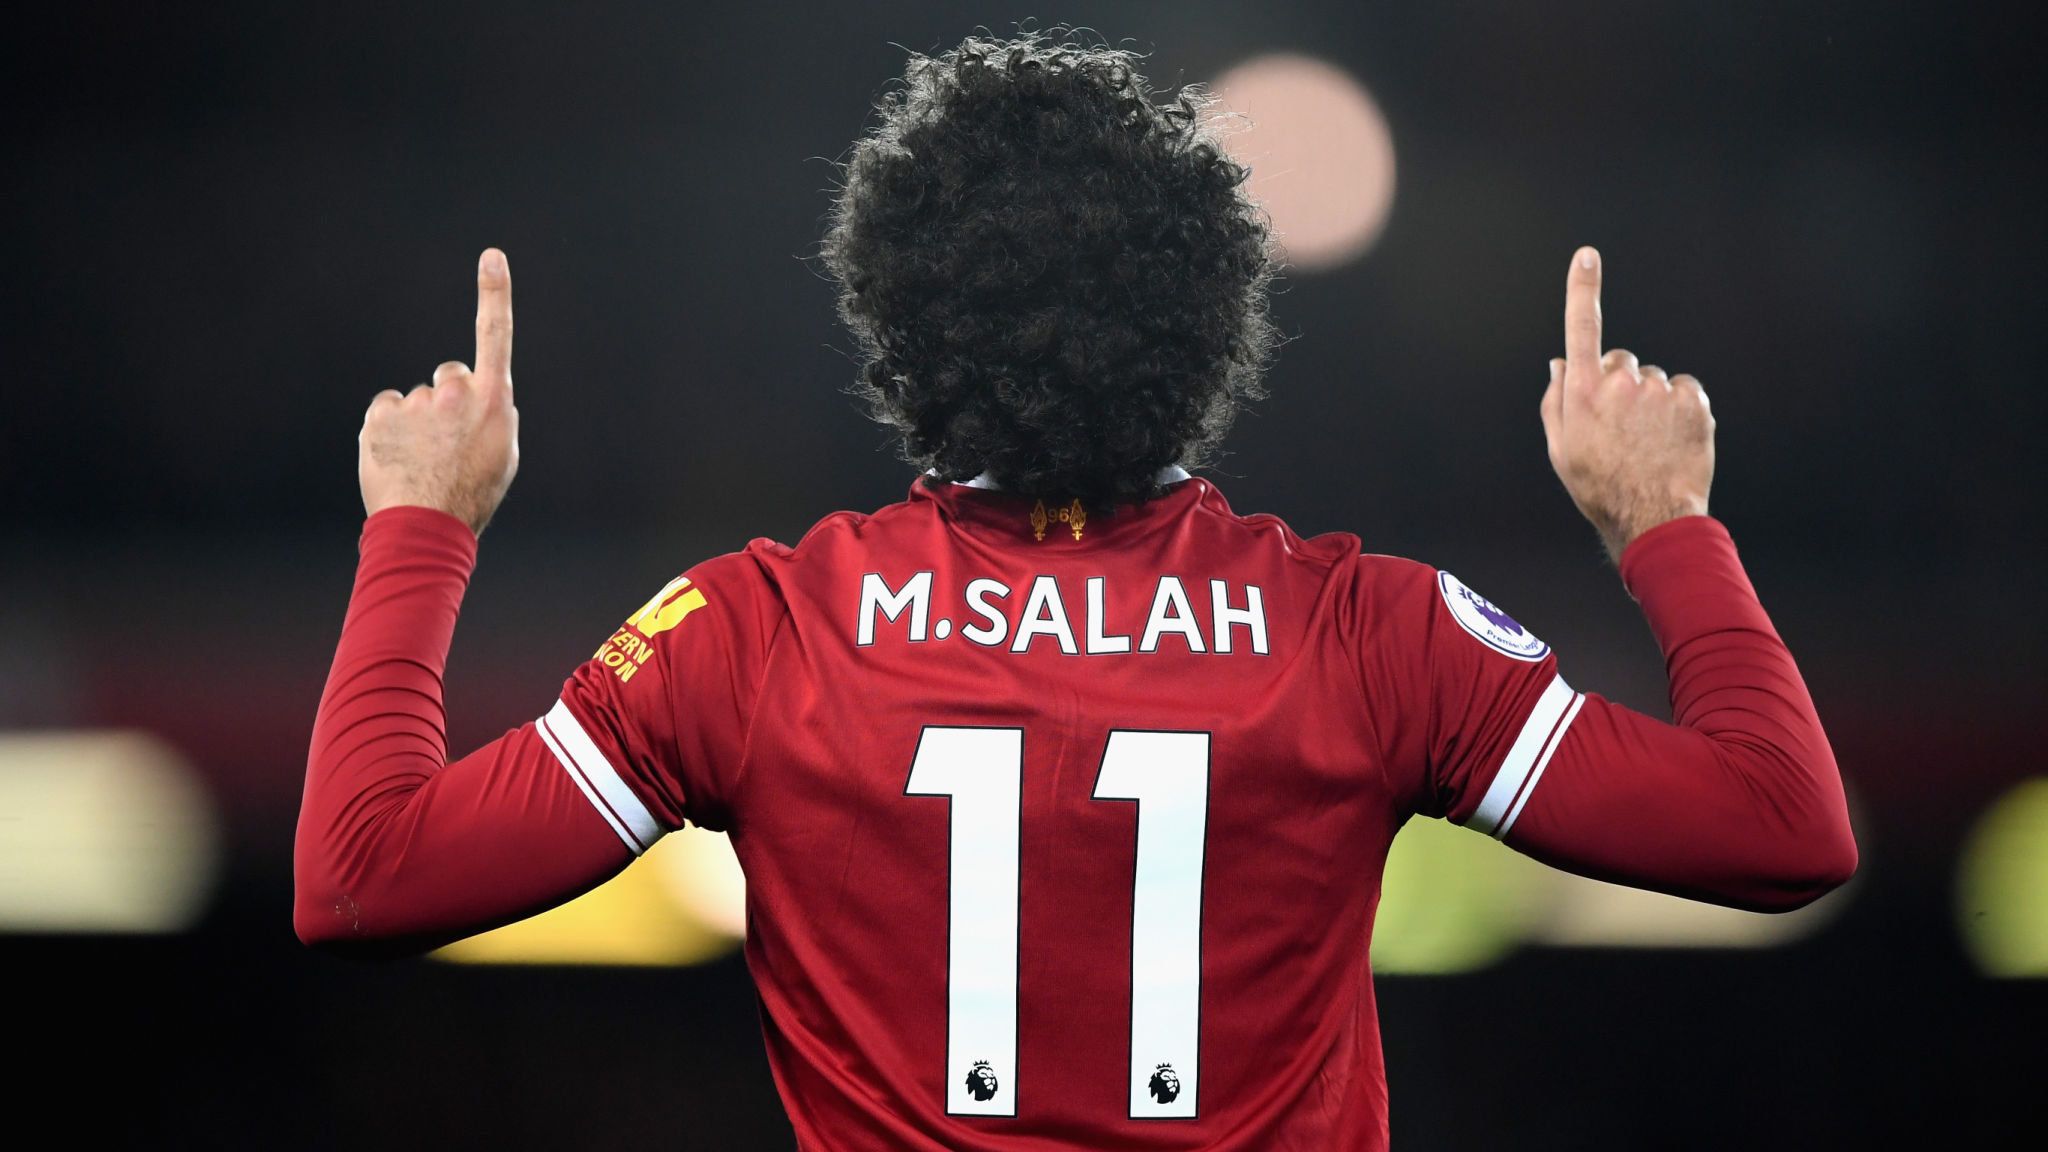 Best Mohamed Salah Background for mobile